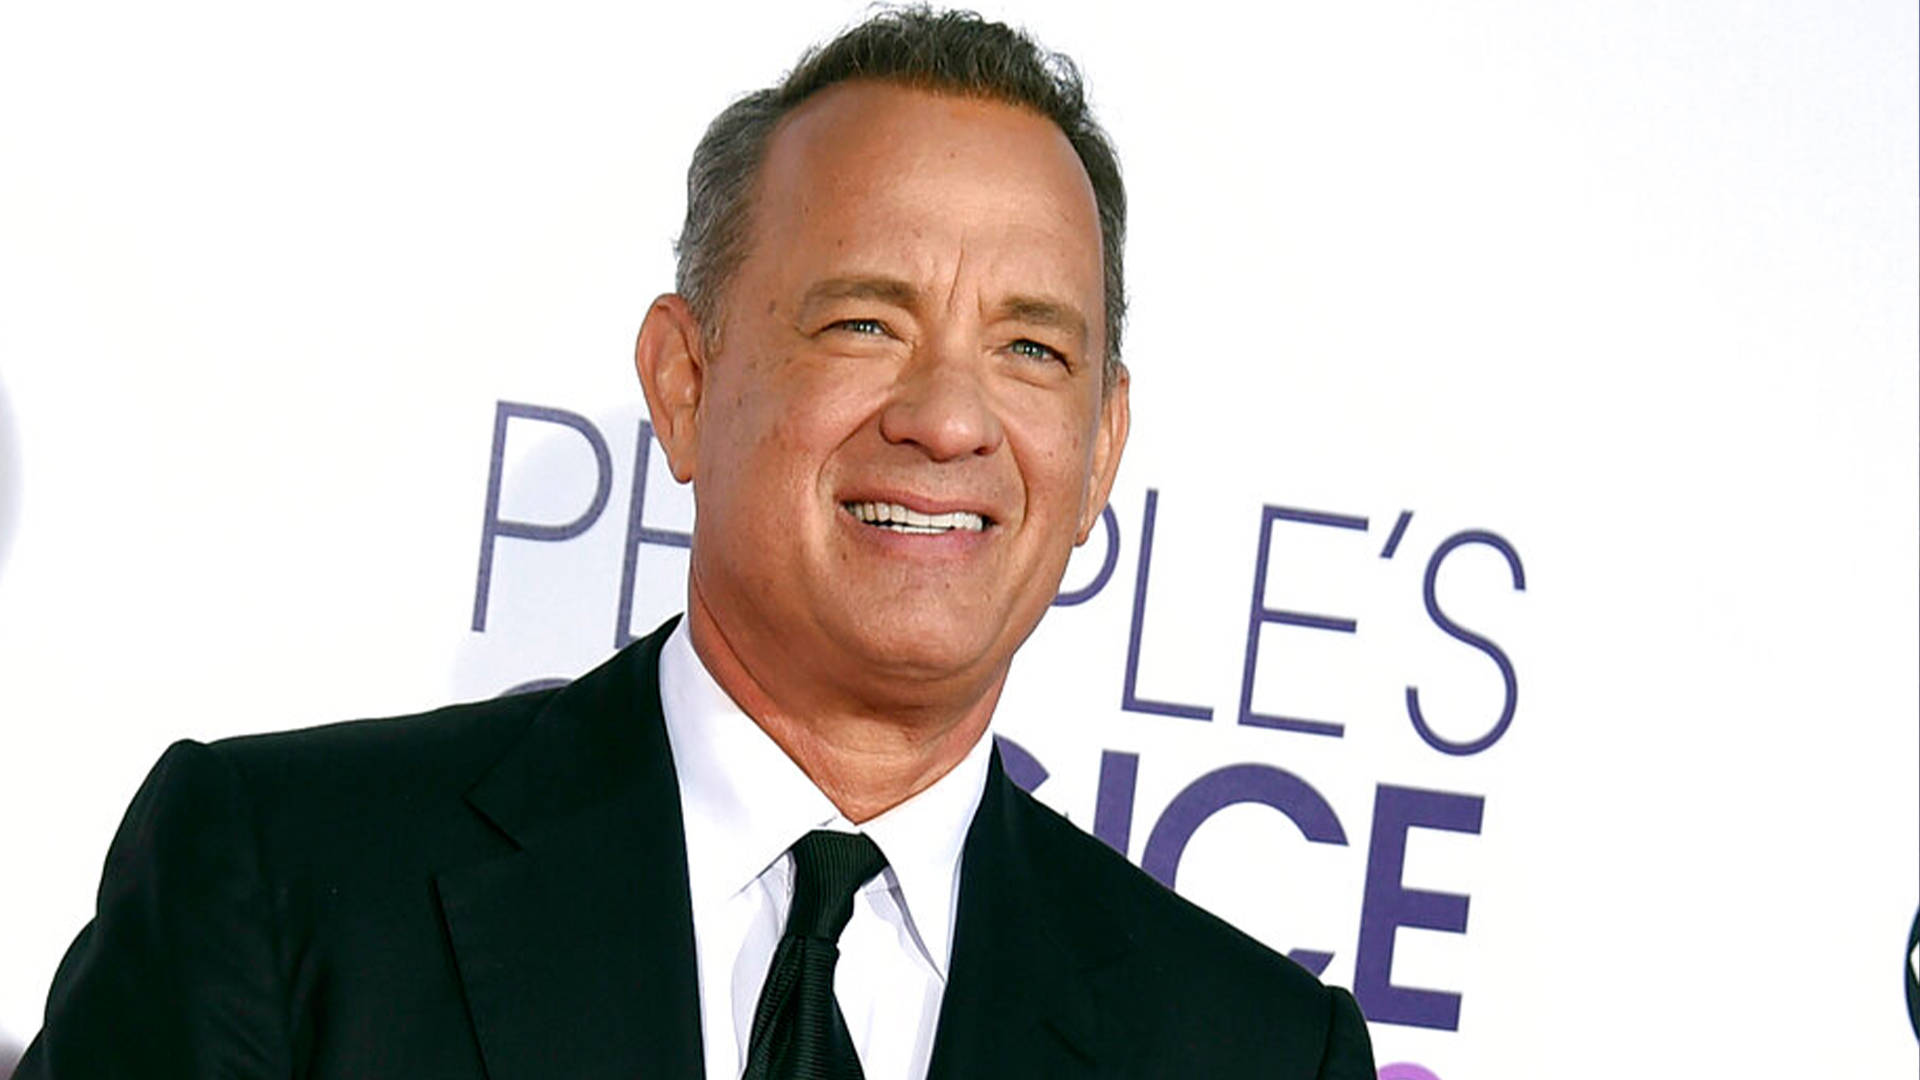 Tom Hanks Award Winning Smile Background